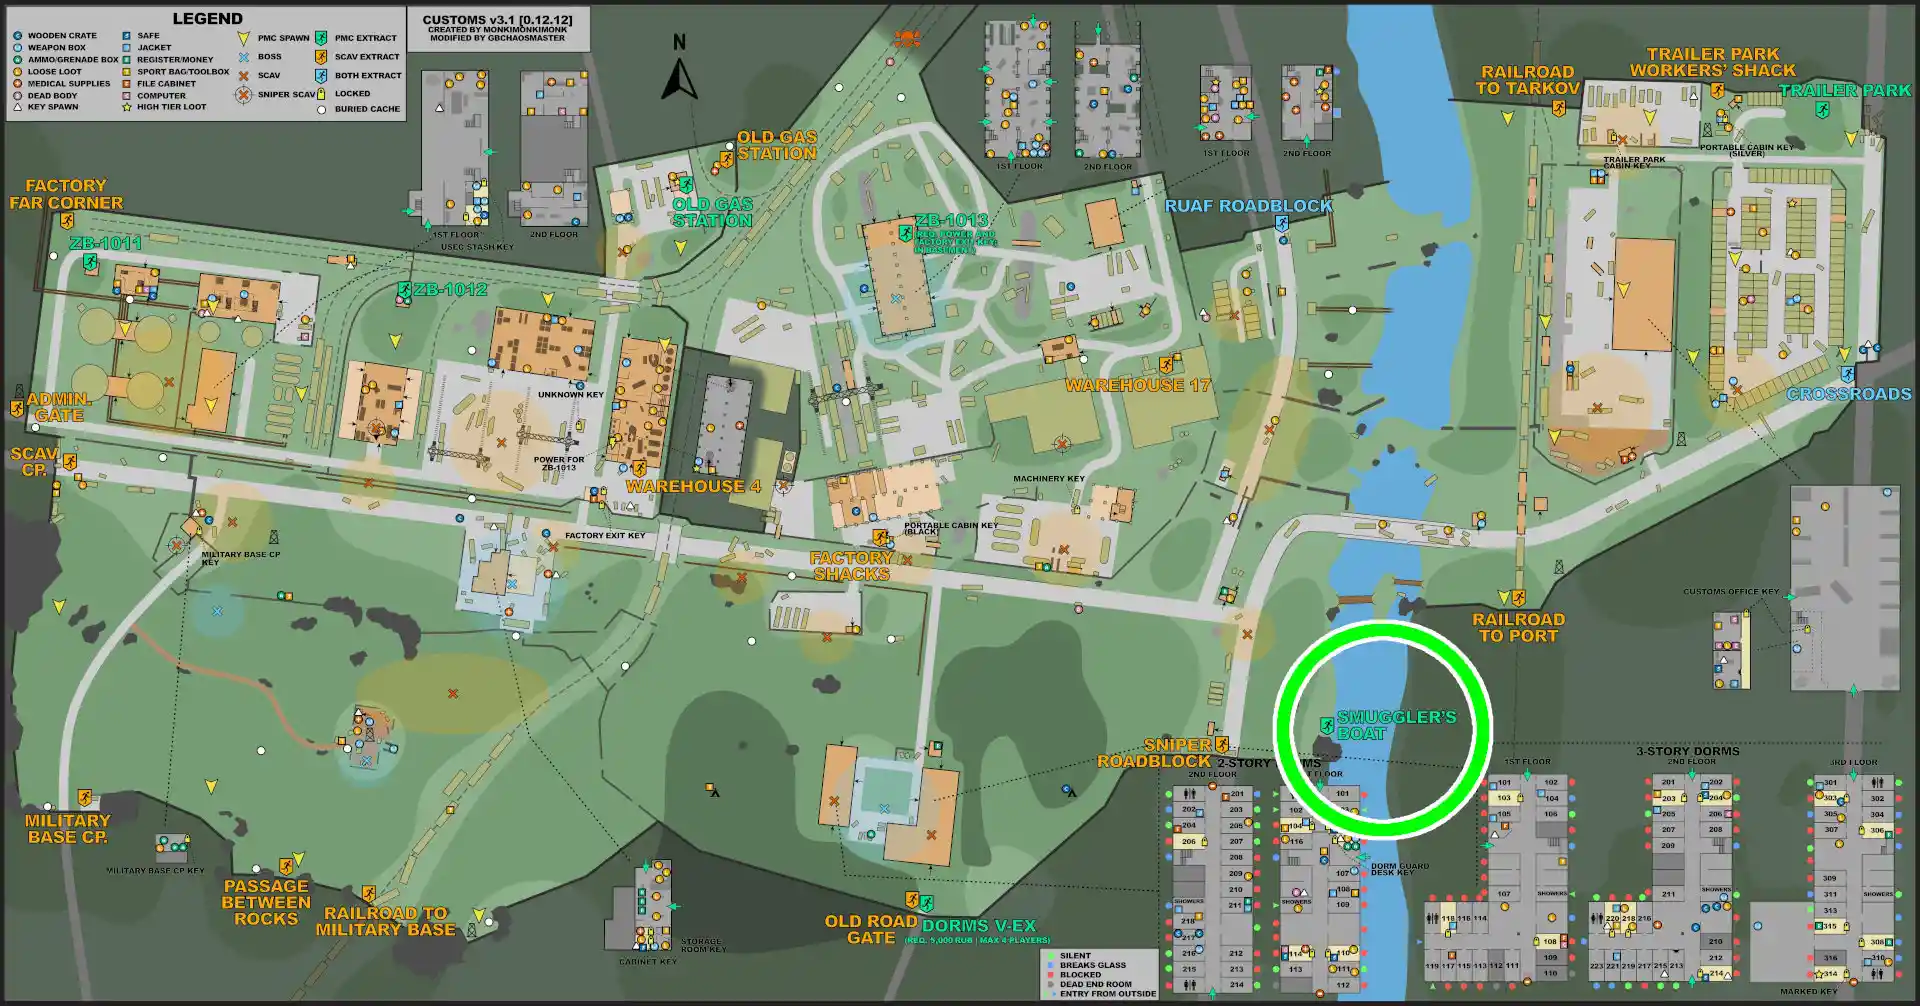 CUSTOMS-ESC-Smuggler's_Boat-MAP.jpg